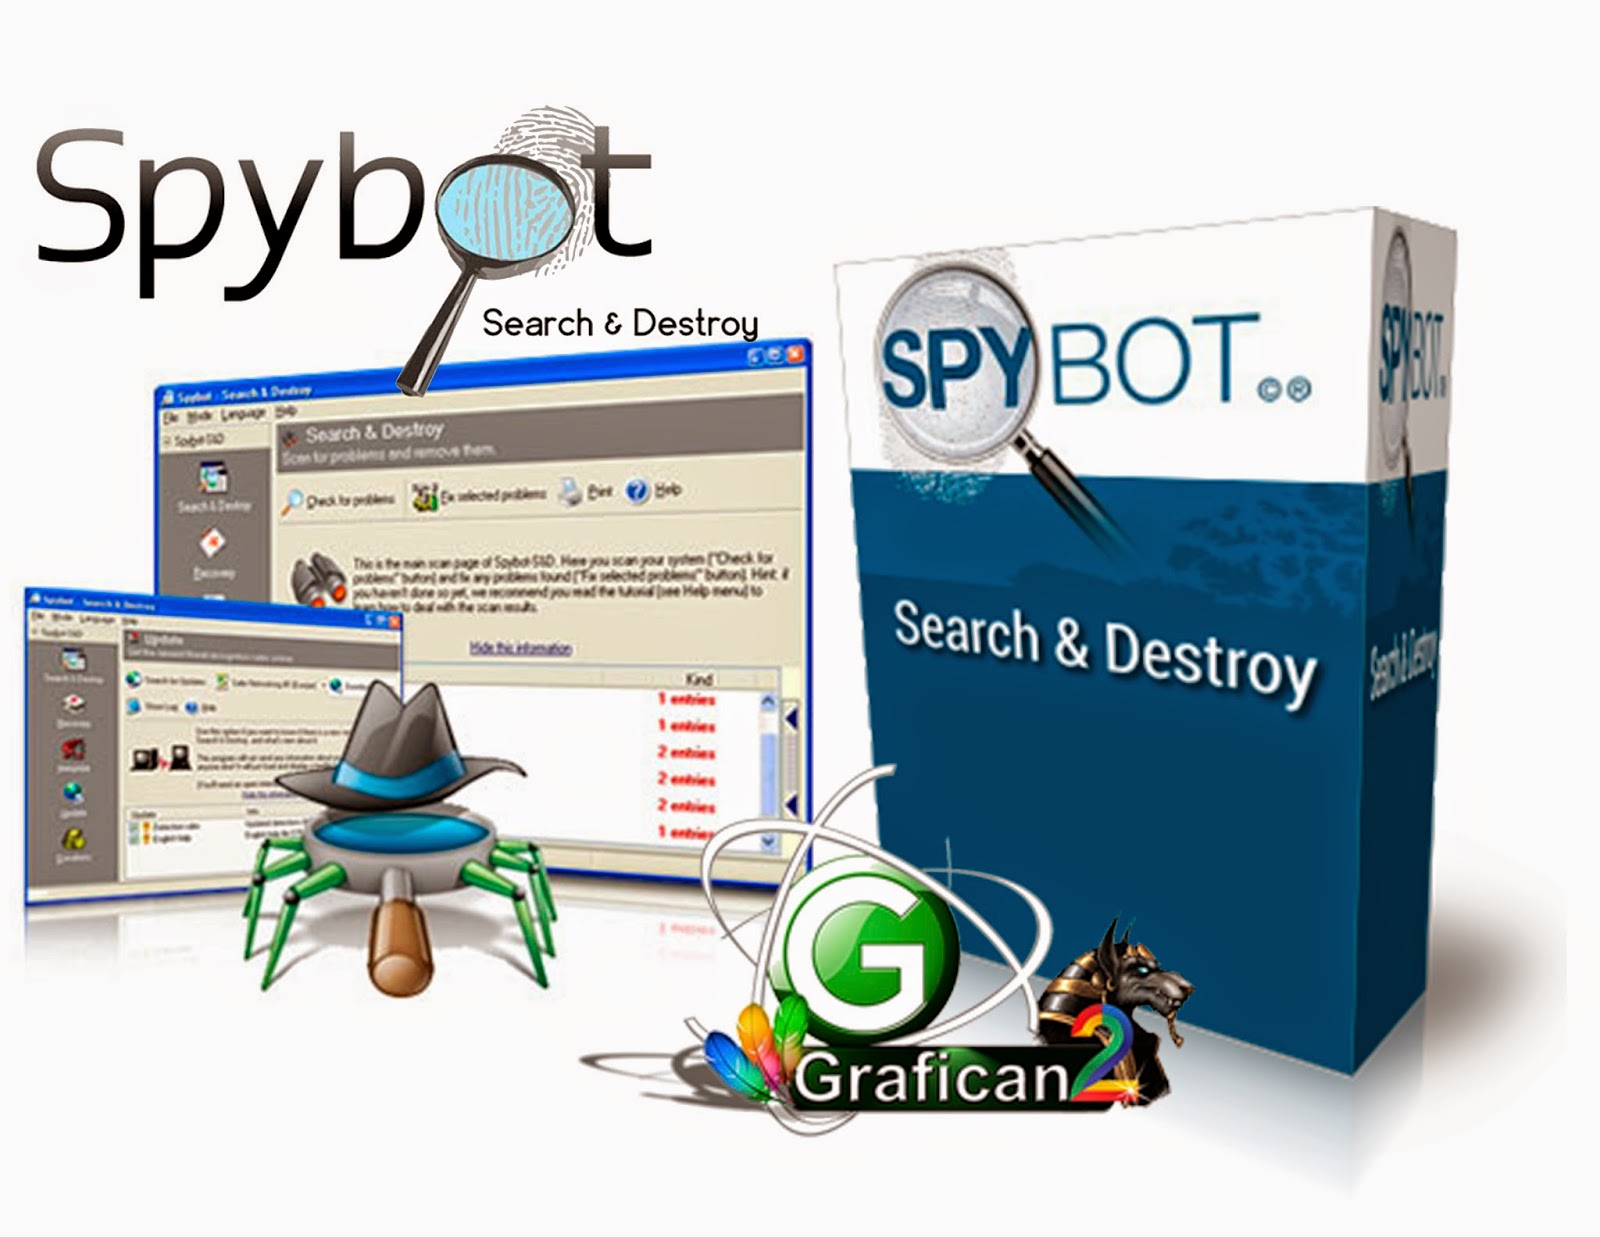 Spybot. Spybot - search & destroy. Spybot search & destroy иконка. Spybot отзывы. Спайбот